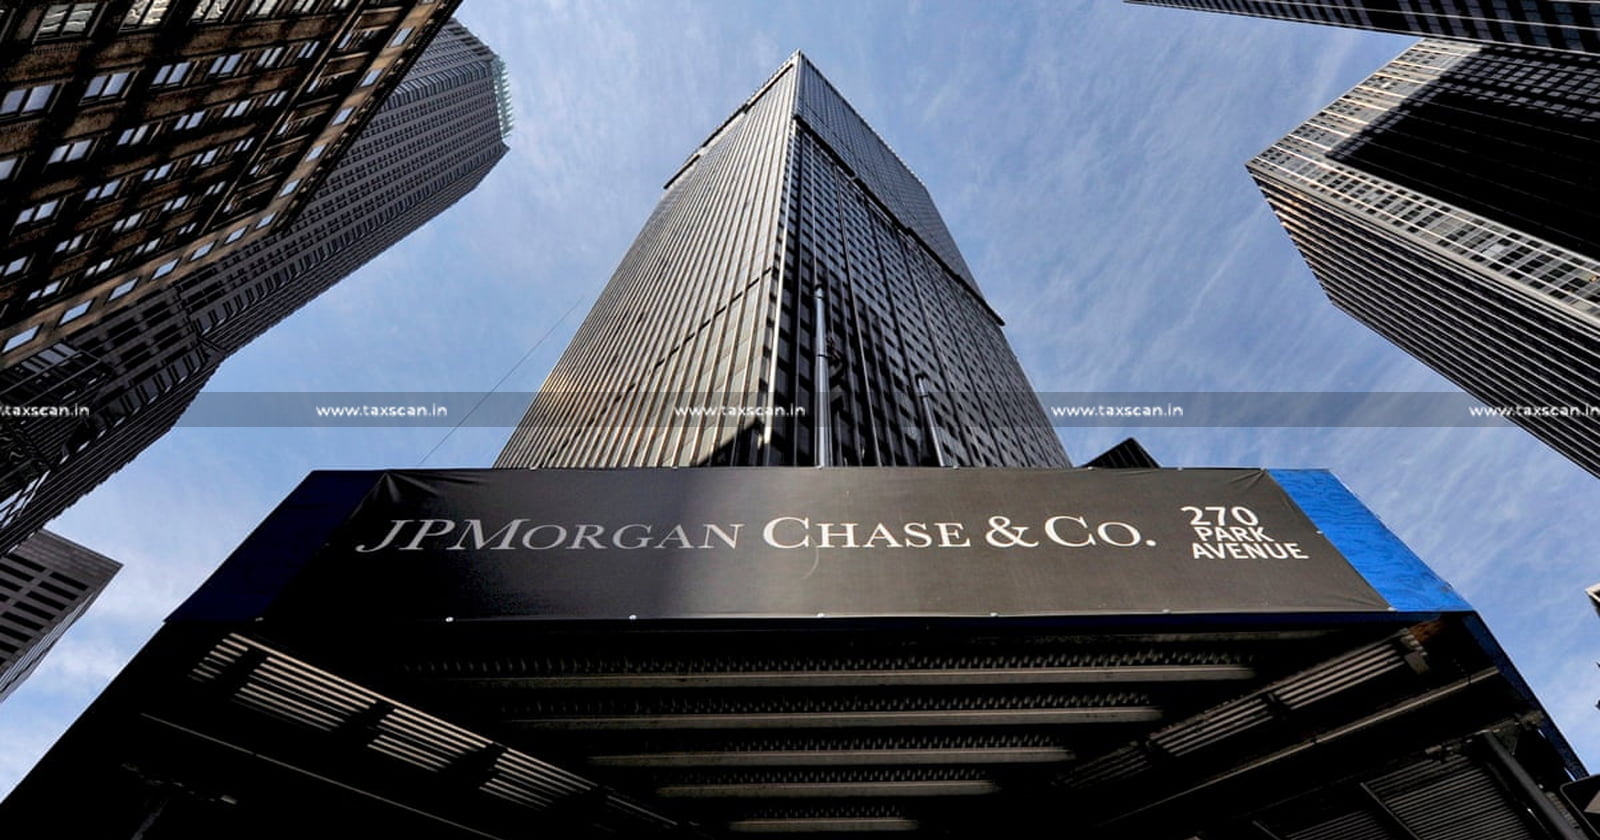 CA - CA Inter - MBA - MBA Vacancy - JPMorgan Chase & Co. - taxscan